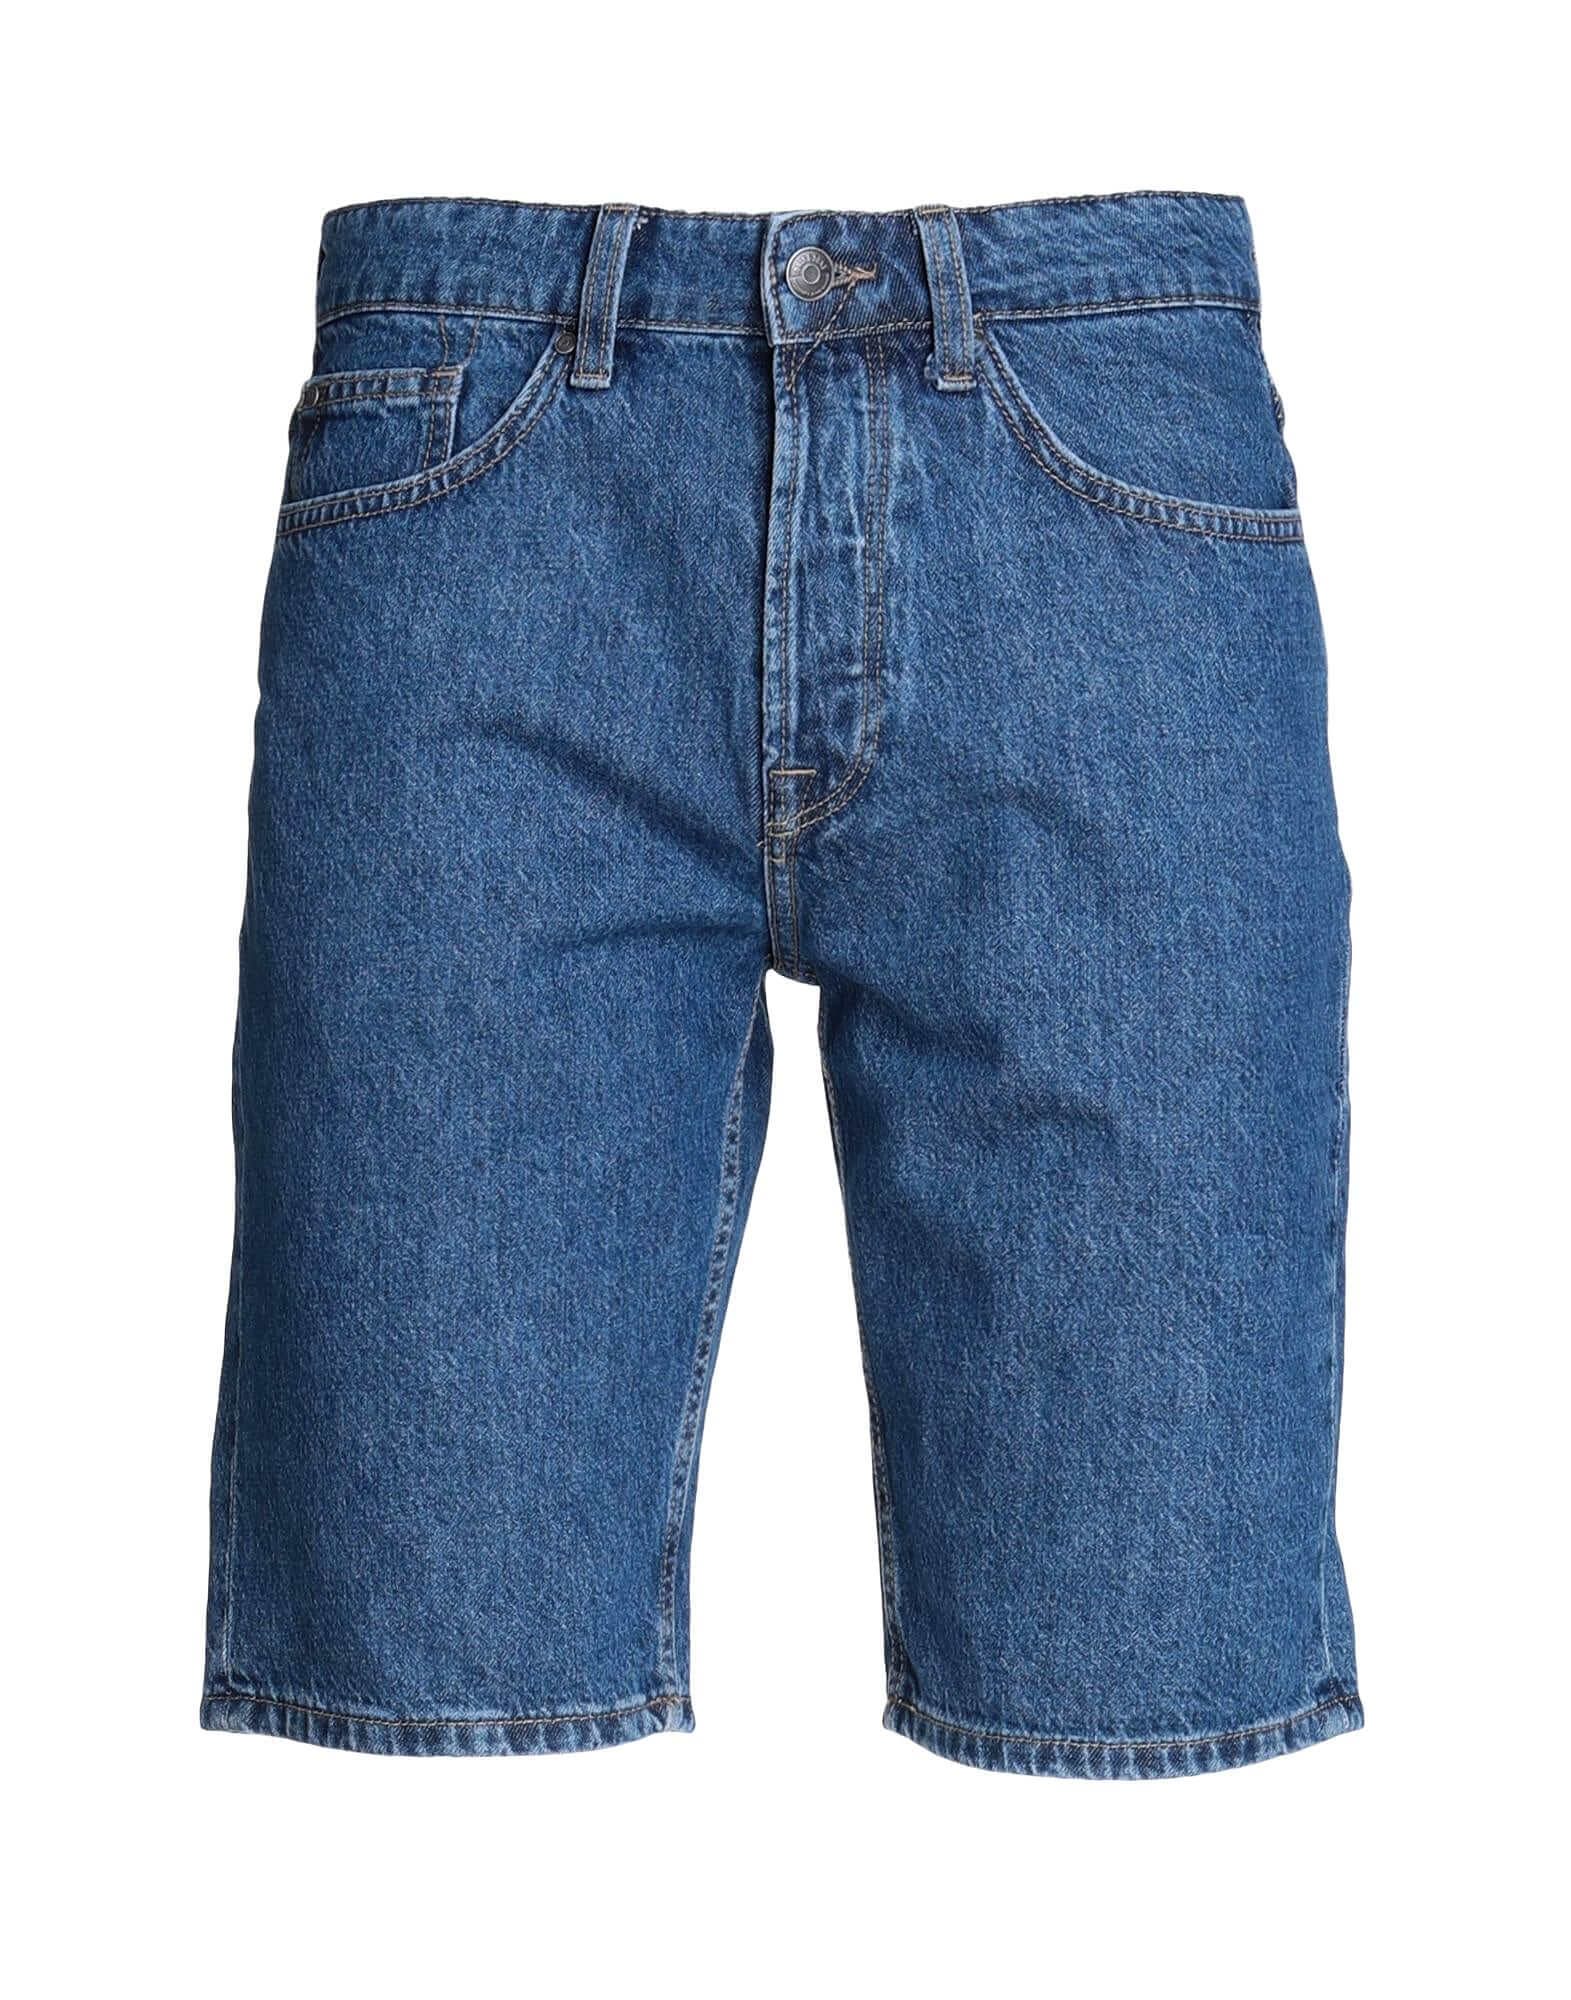 Шорты Only & Sons Denim, синий джинсовые шорты в рулоне женские джинсовые шорты с высокой талией стрейчевые джинсовые шорты